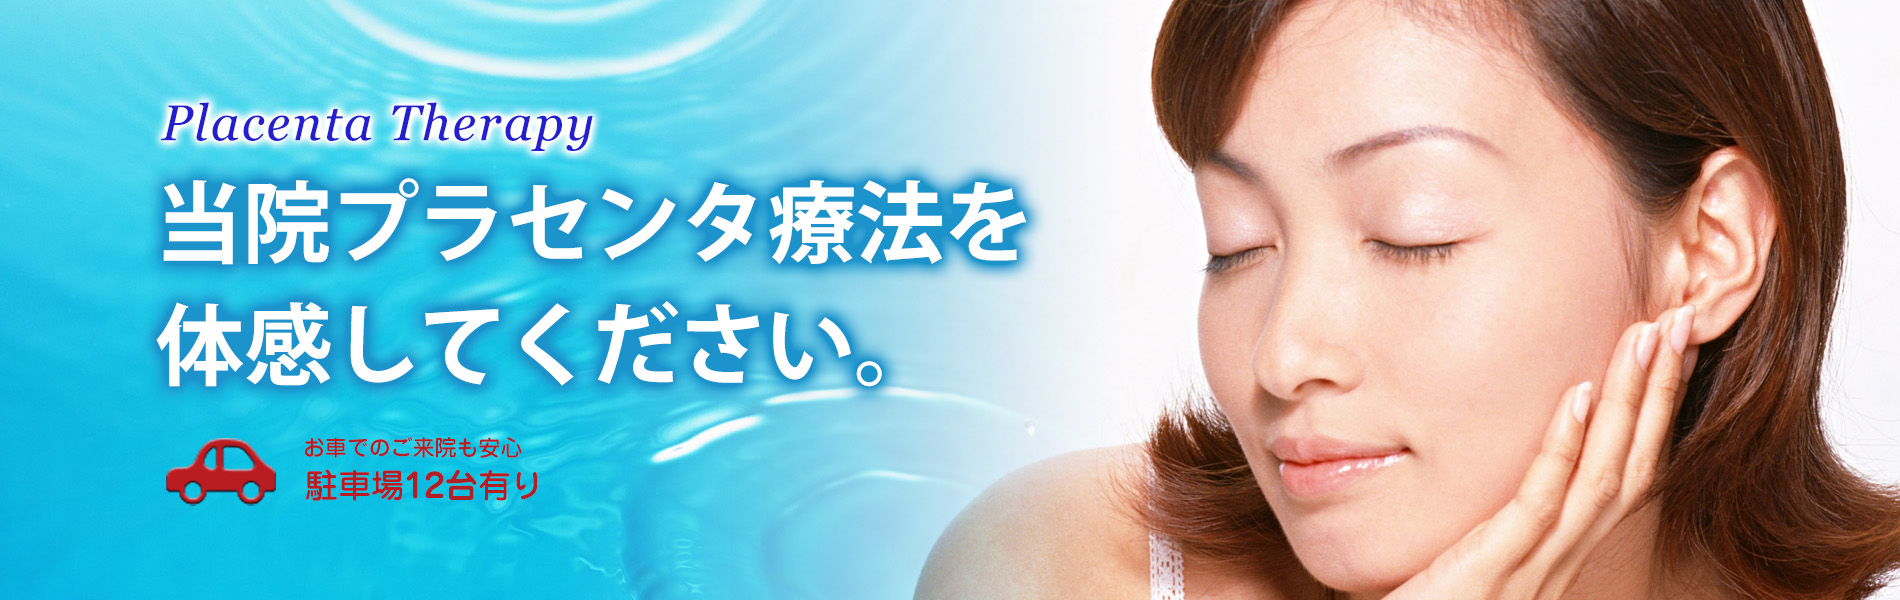 滋賀県野洲市のミカミクリニックです。当院ではプラセンタ、美容点滴、プラセンタ注射を中心とするアンチエイジング専門のクリニックです。